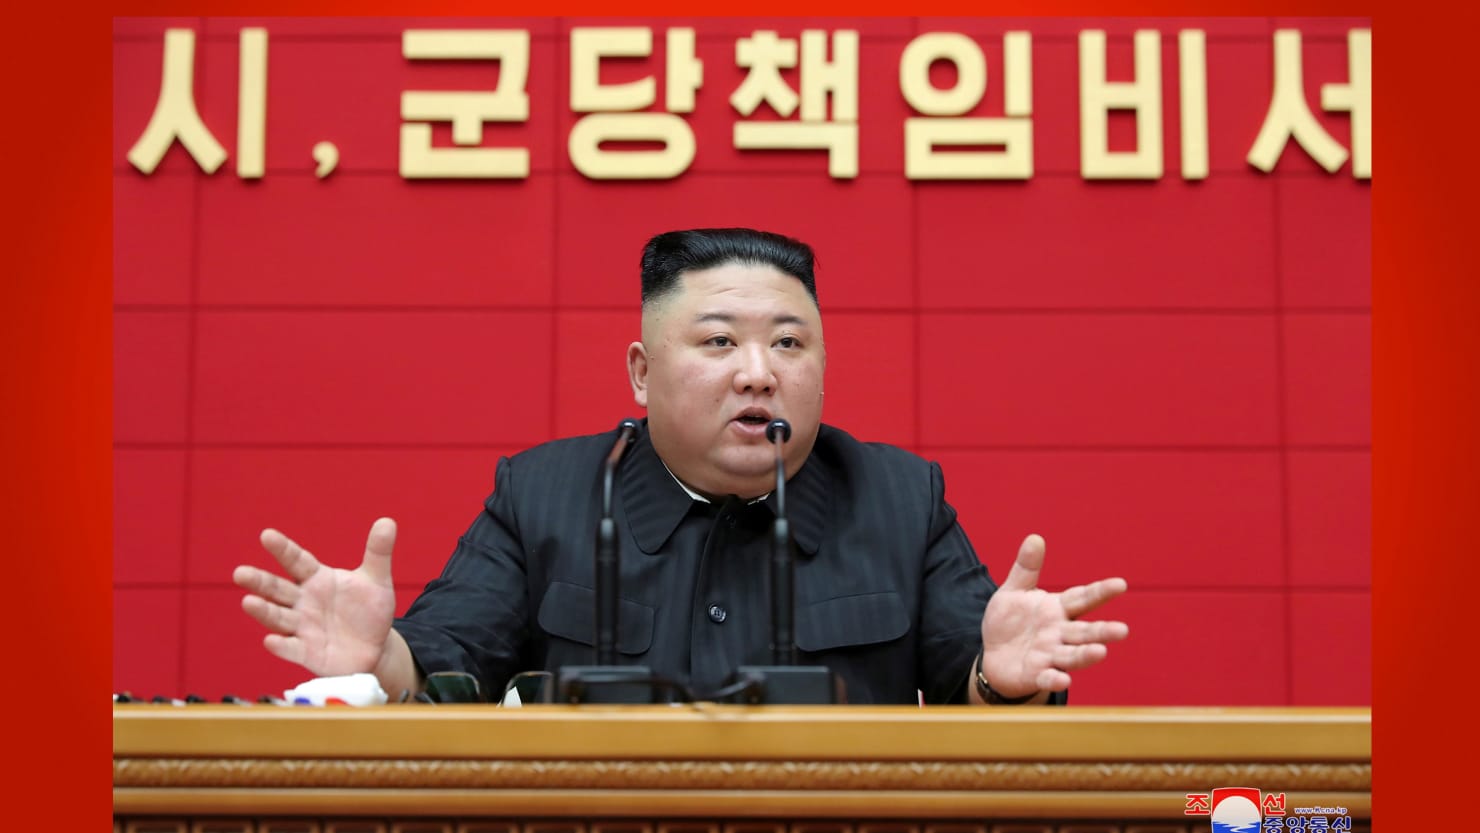 North Korean leader Kim Jong Un is not responding to Biden’s calls